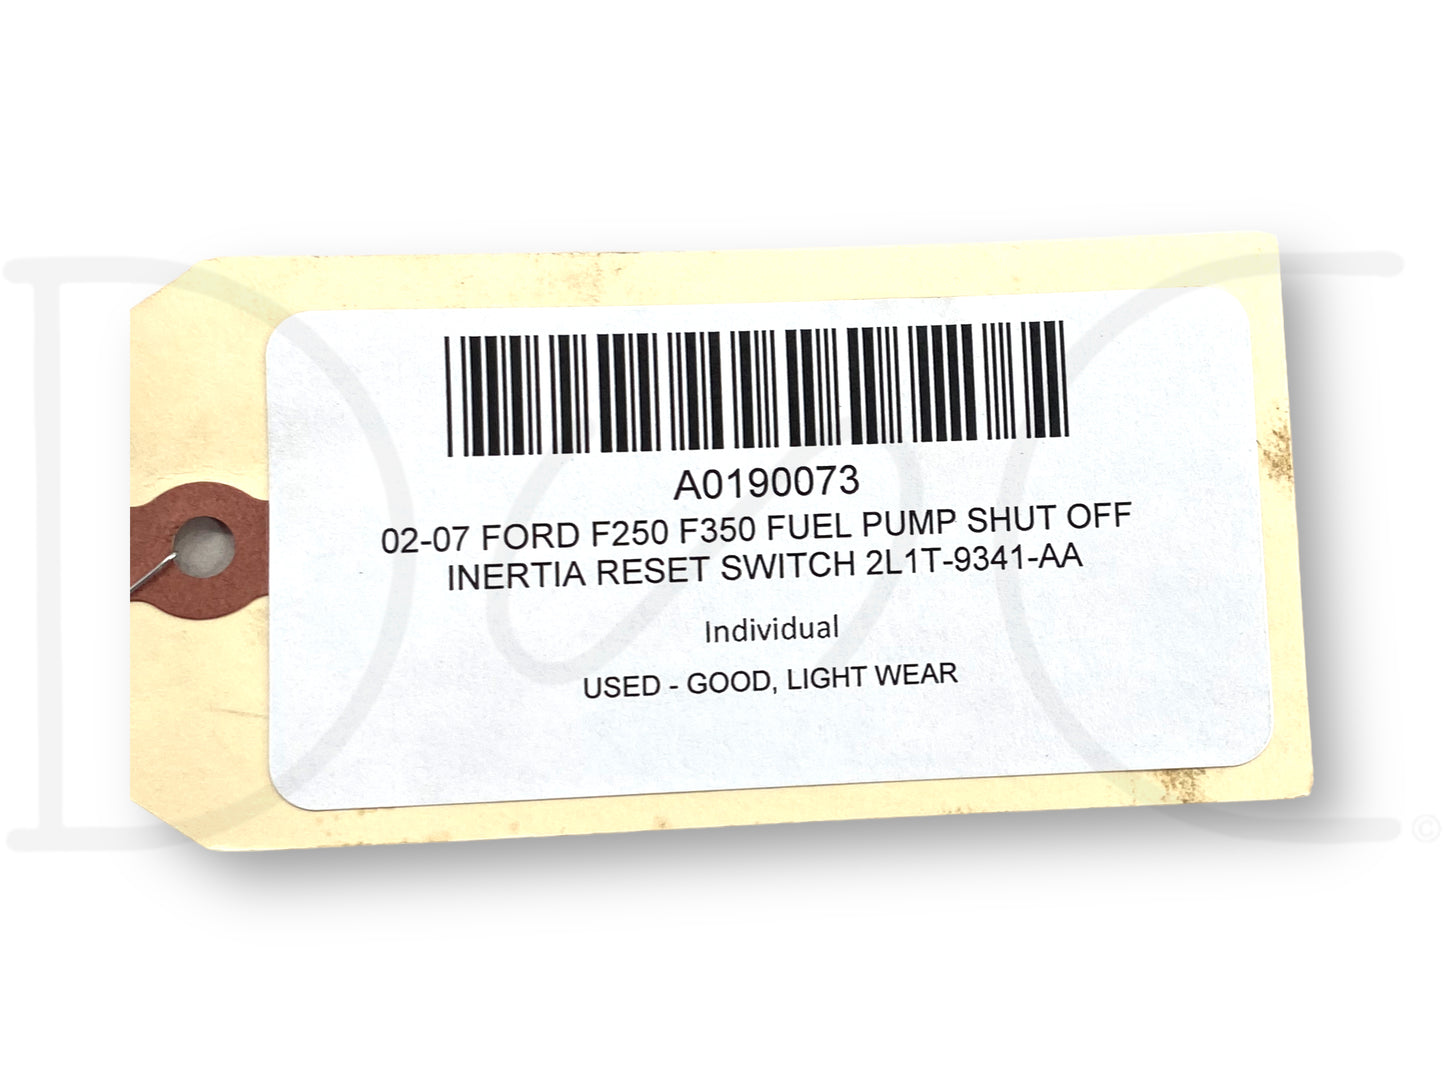 02-07 Ford F250 F350 Fuel Pump Shut Off Inertia Reset Switch 2L1T-9341-Aa